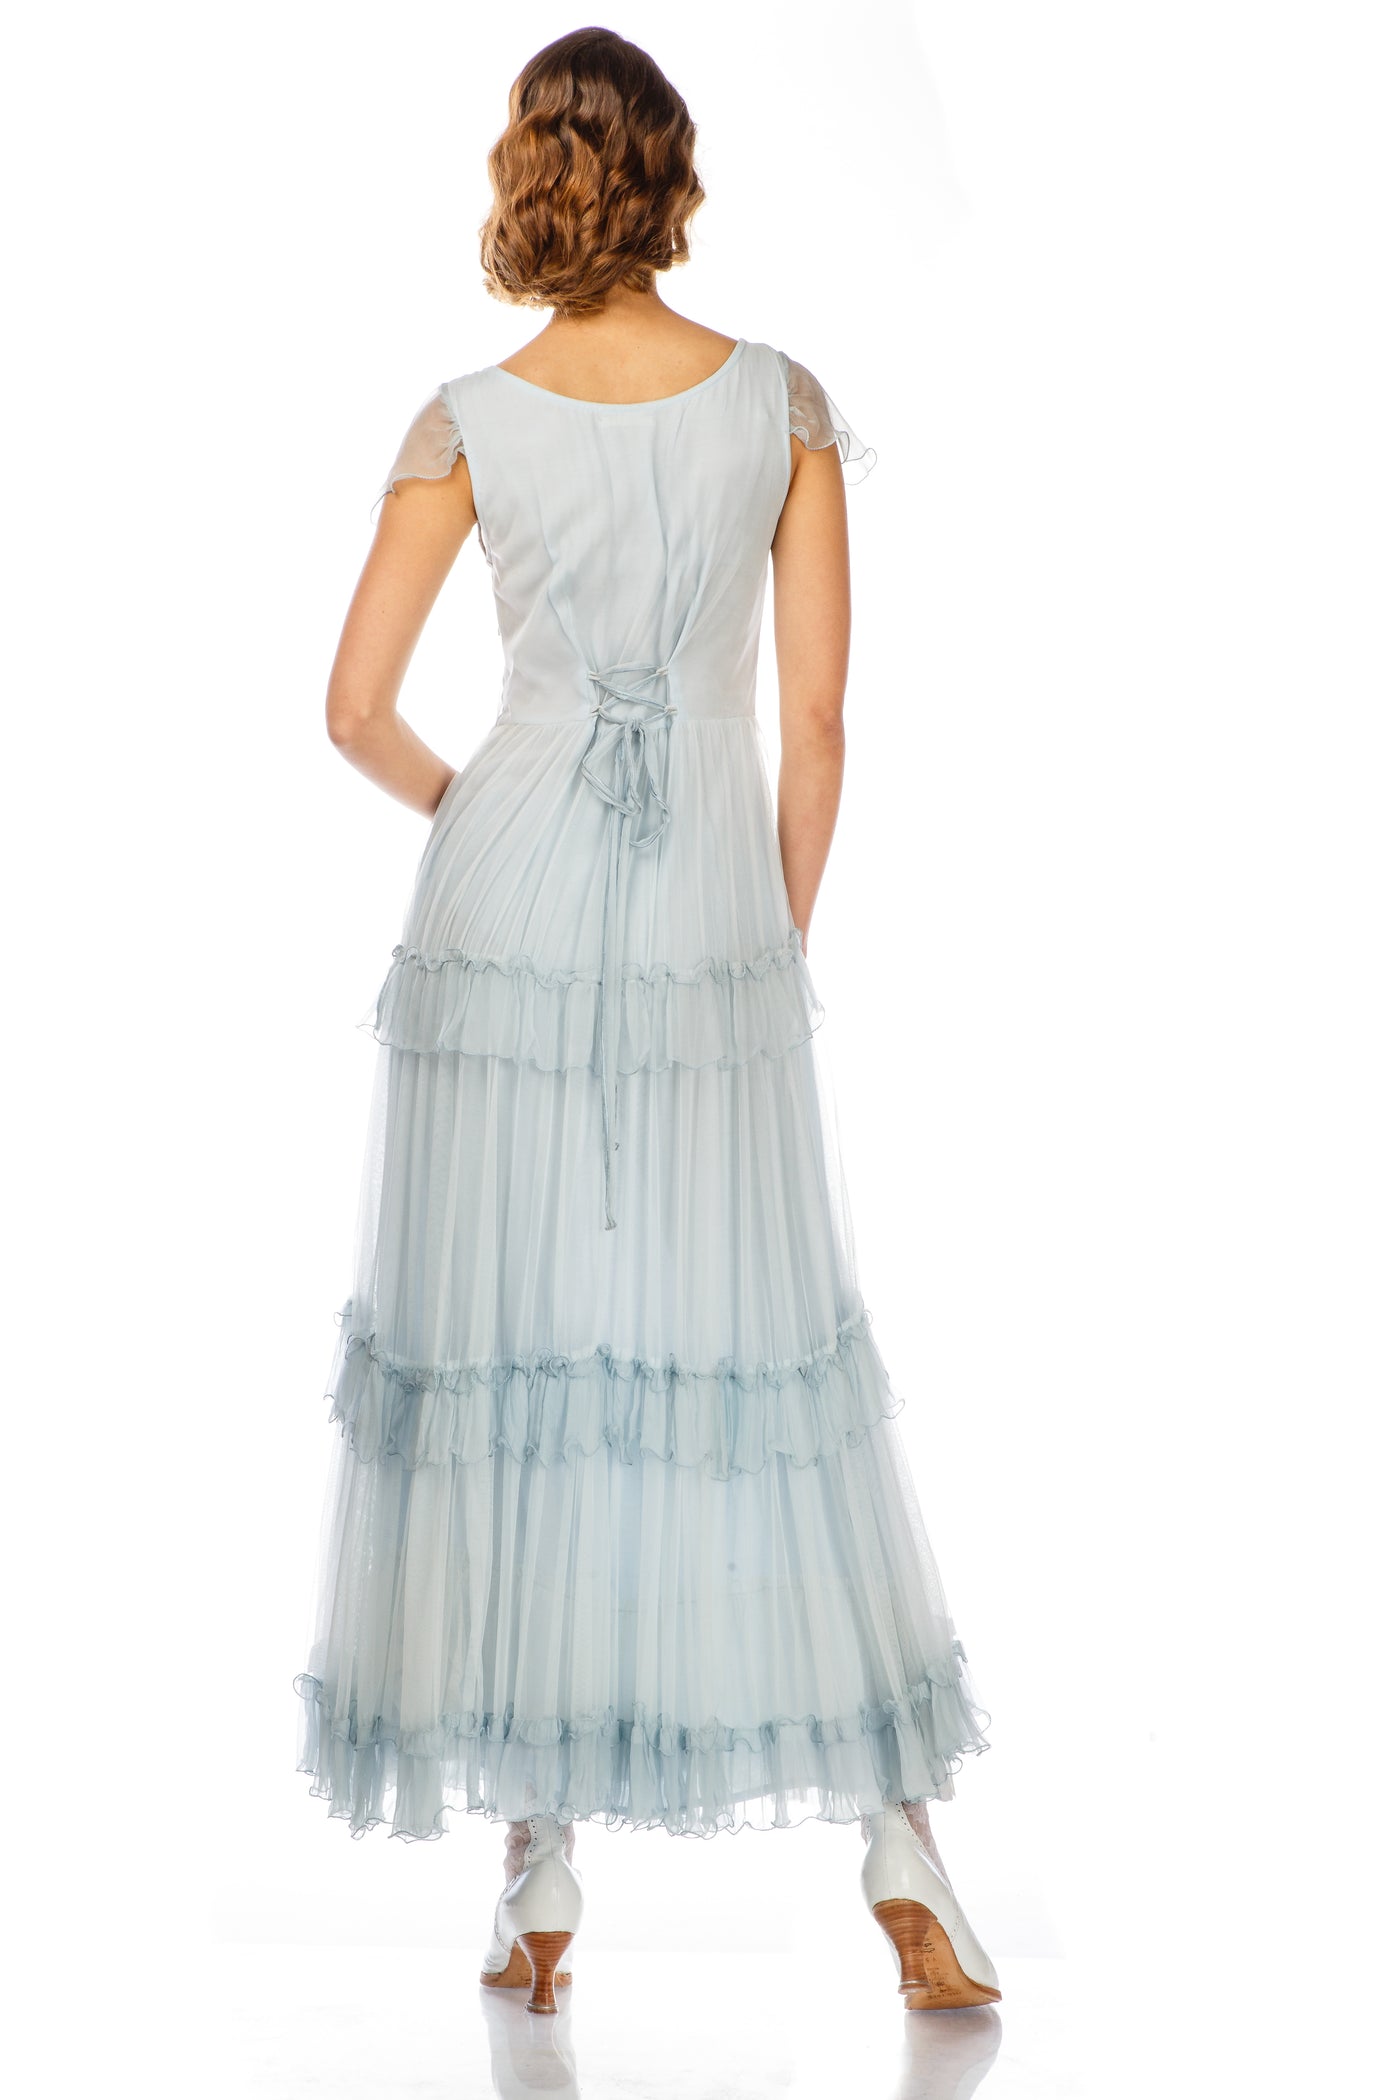 Harper Vintage Insprired Wedding Dress in Blue by Nataya